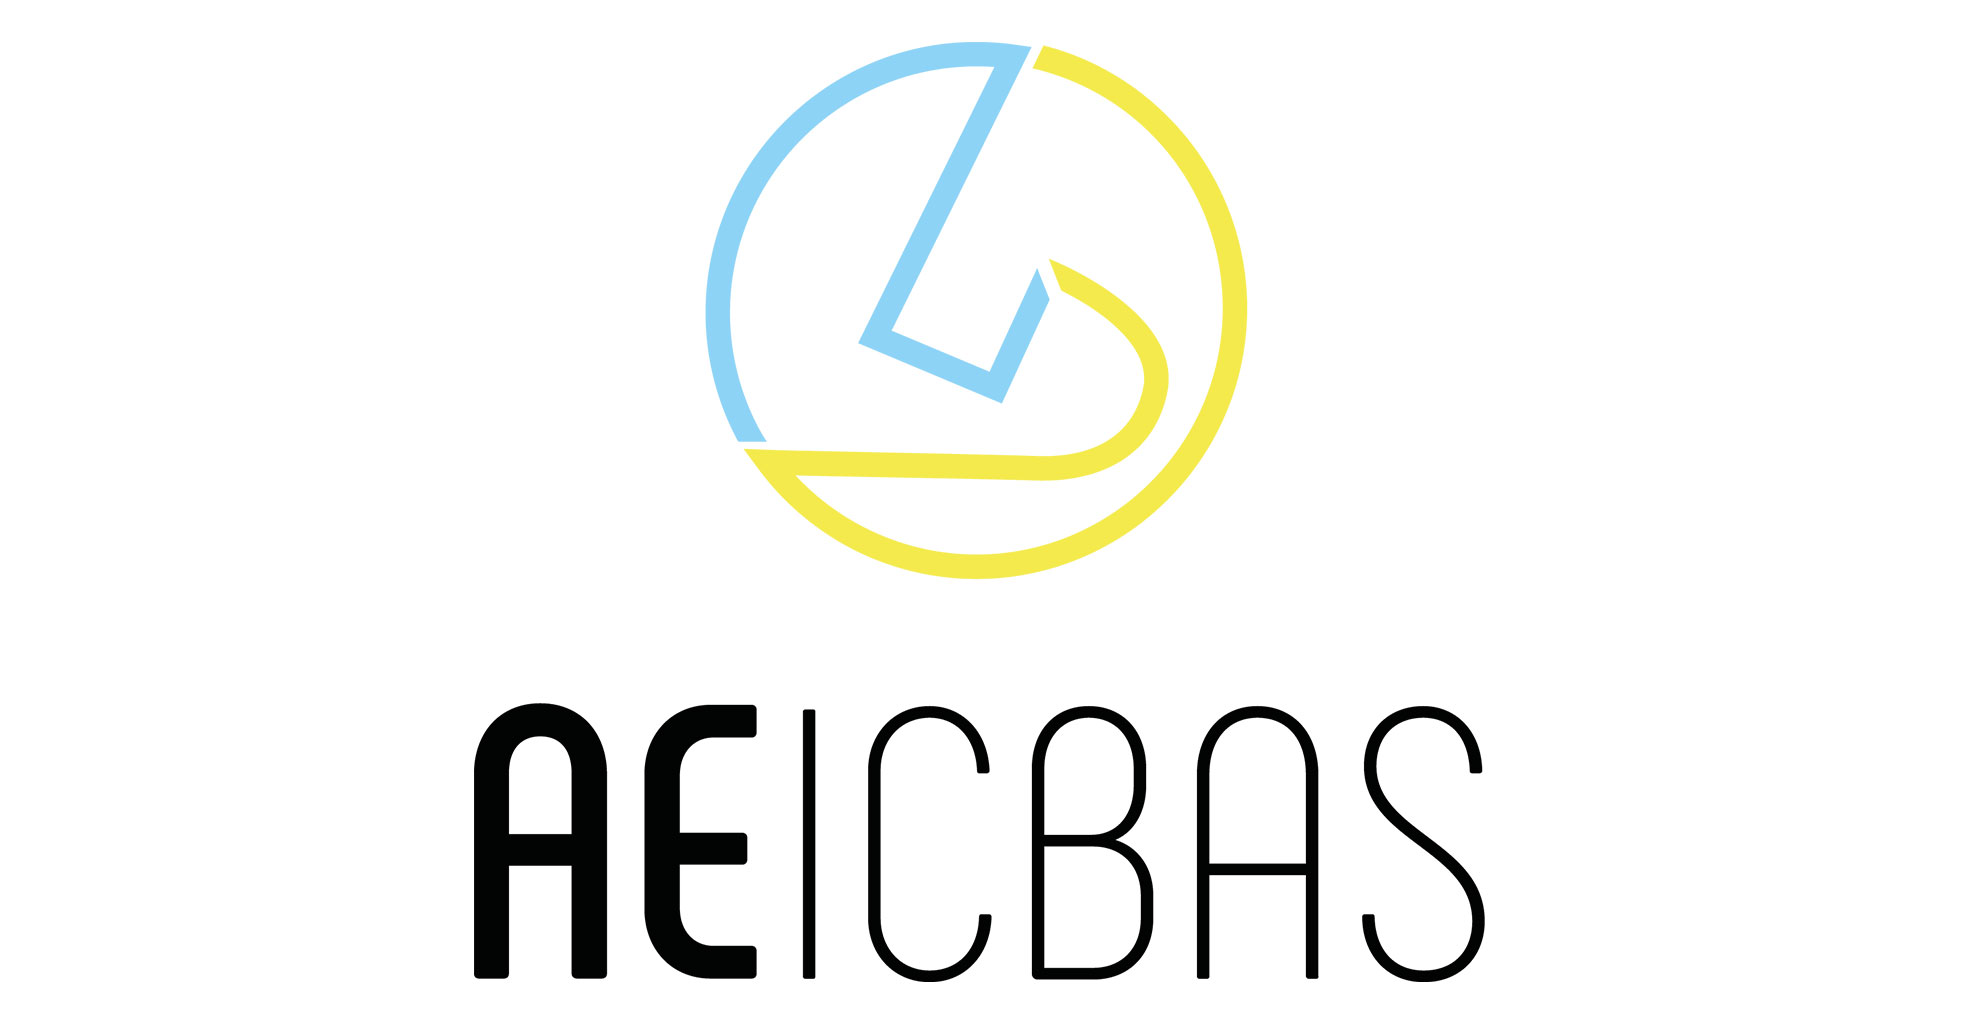 Fundação assina protocolo de apoio desportivo com AEICBAS